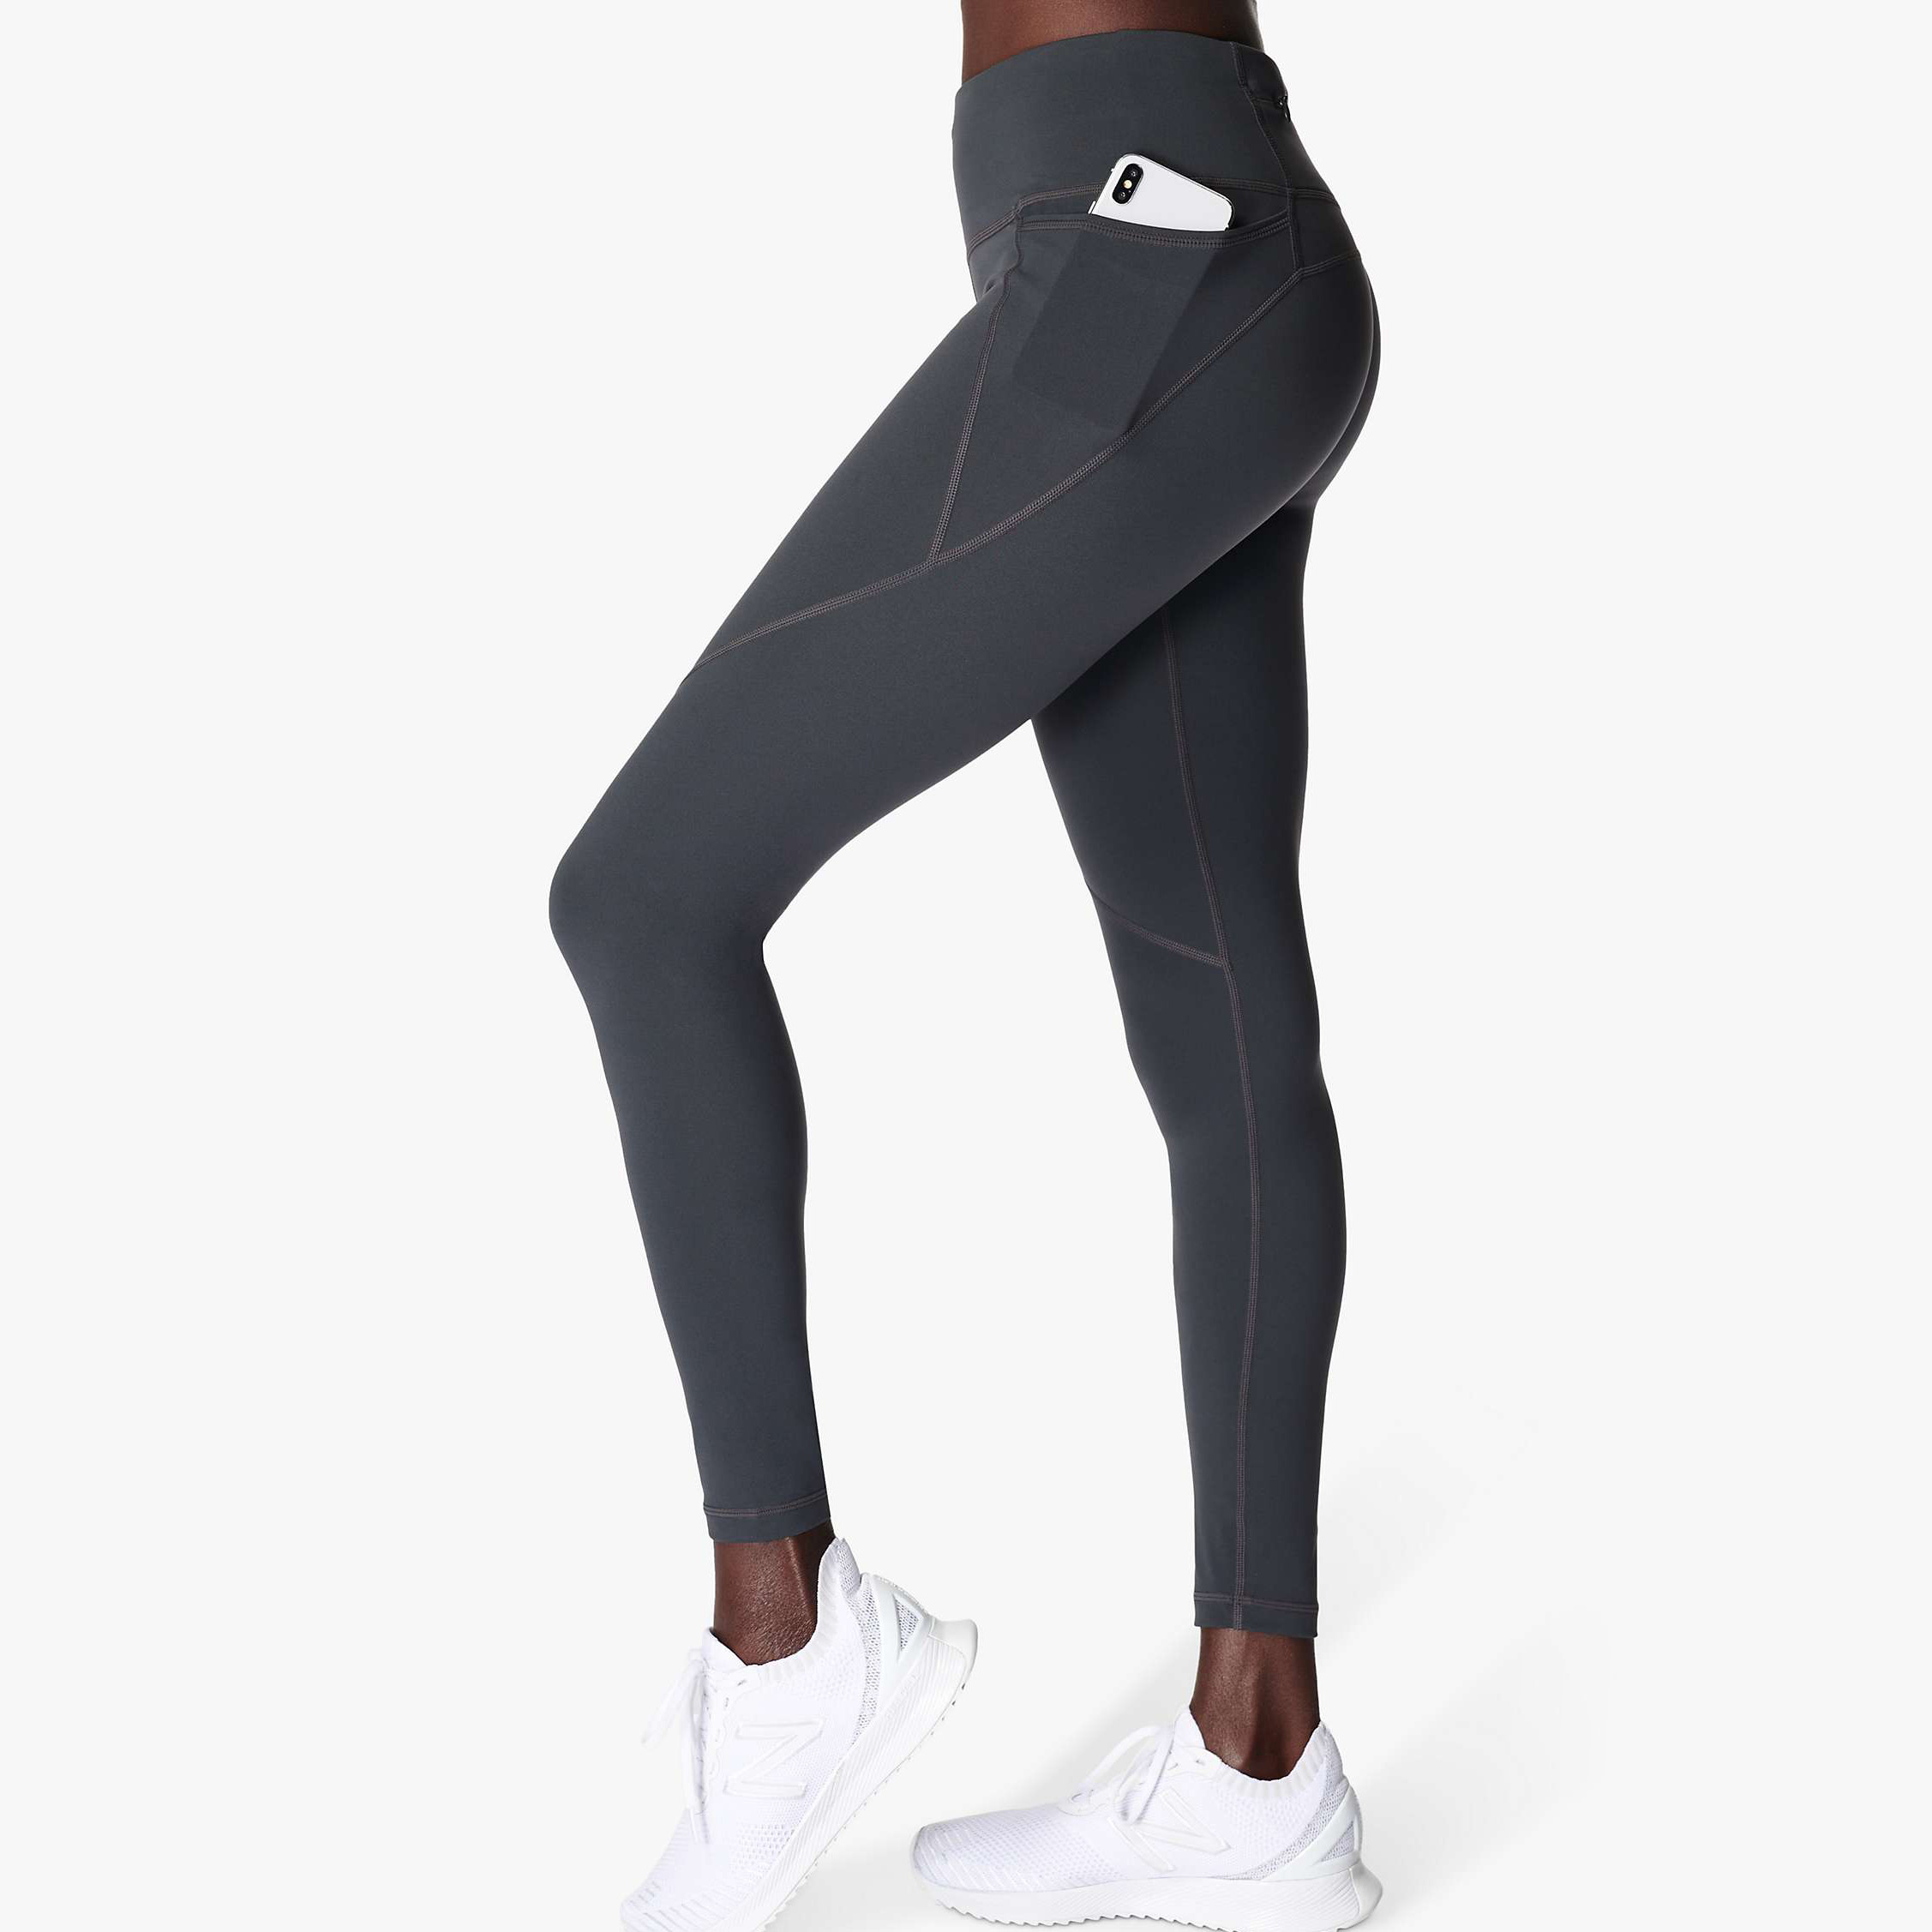 Regular Leggings (8-14 UK Size) - Glitter | Running leggings women, Soft  leggings, Workout leggings